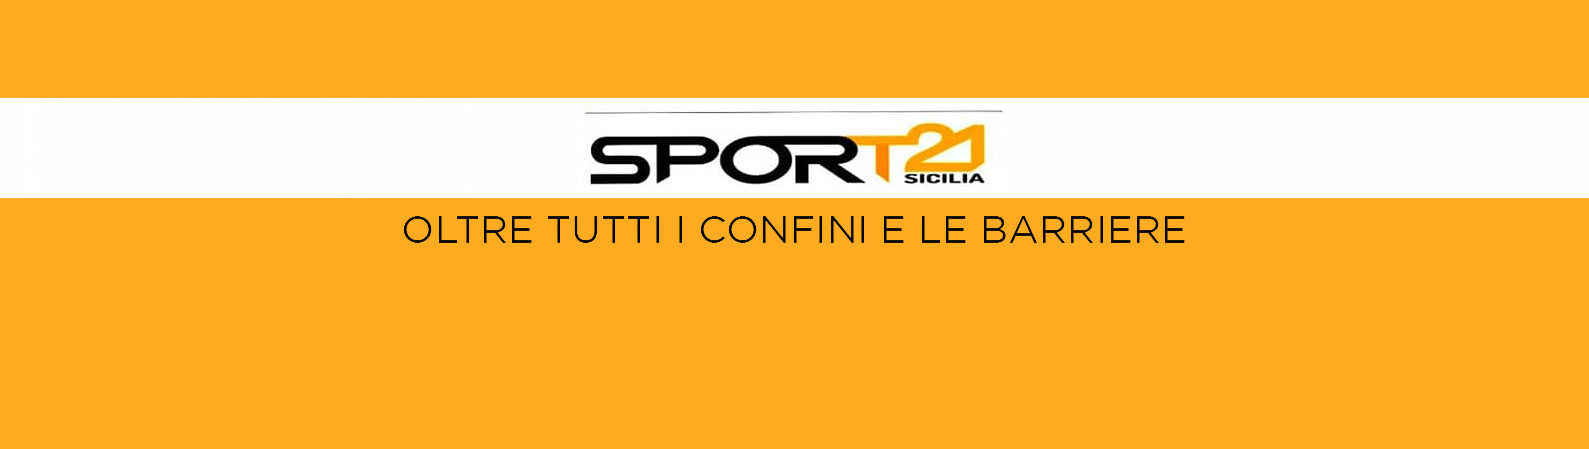 SporT21 Sicilia